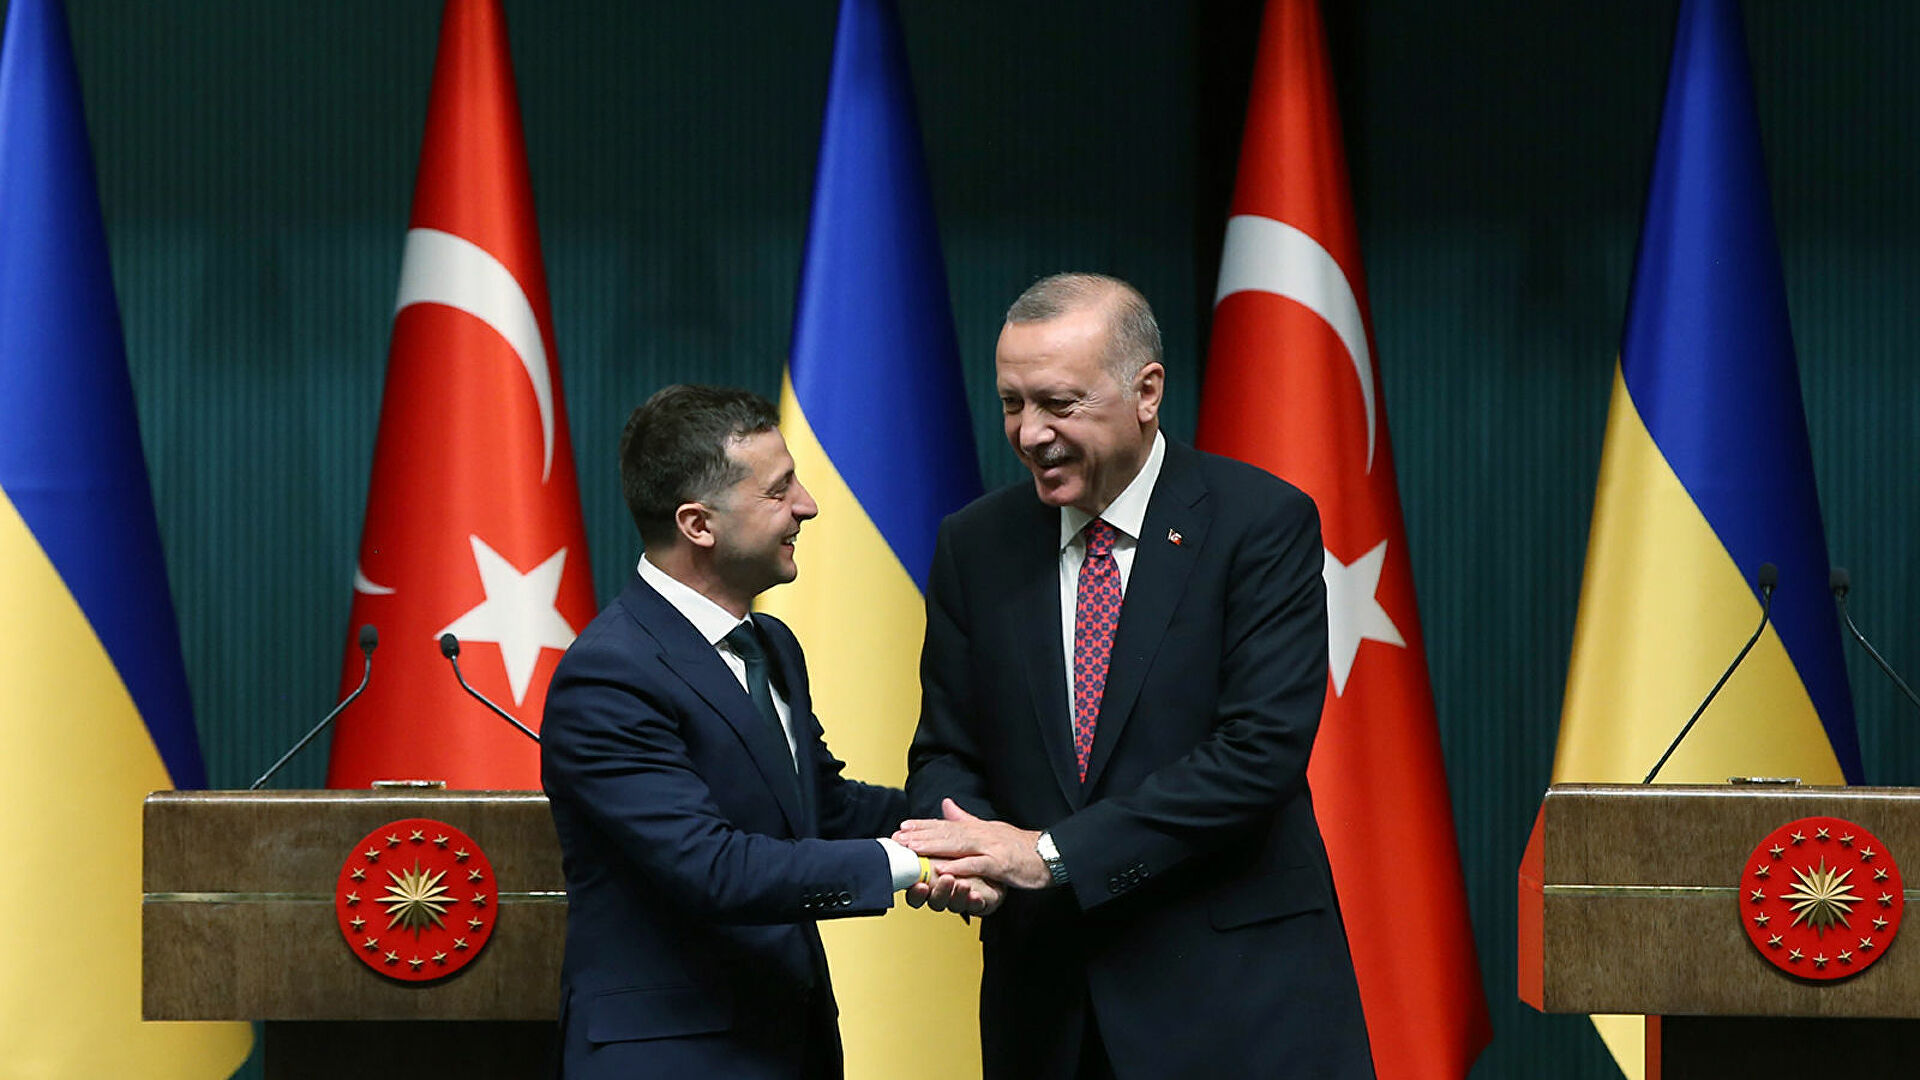 Маркедонов: Украина - часть амбициозного проекта Турции по усилению позиций в Евразии 